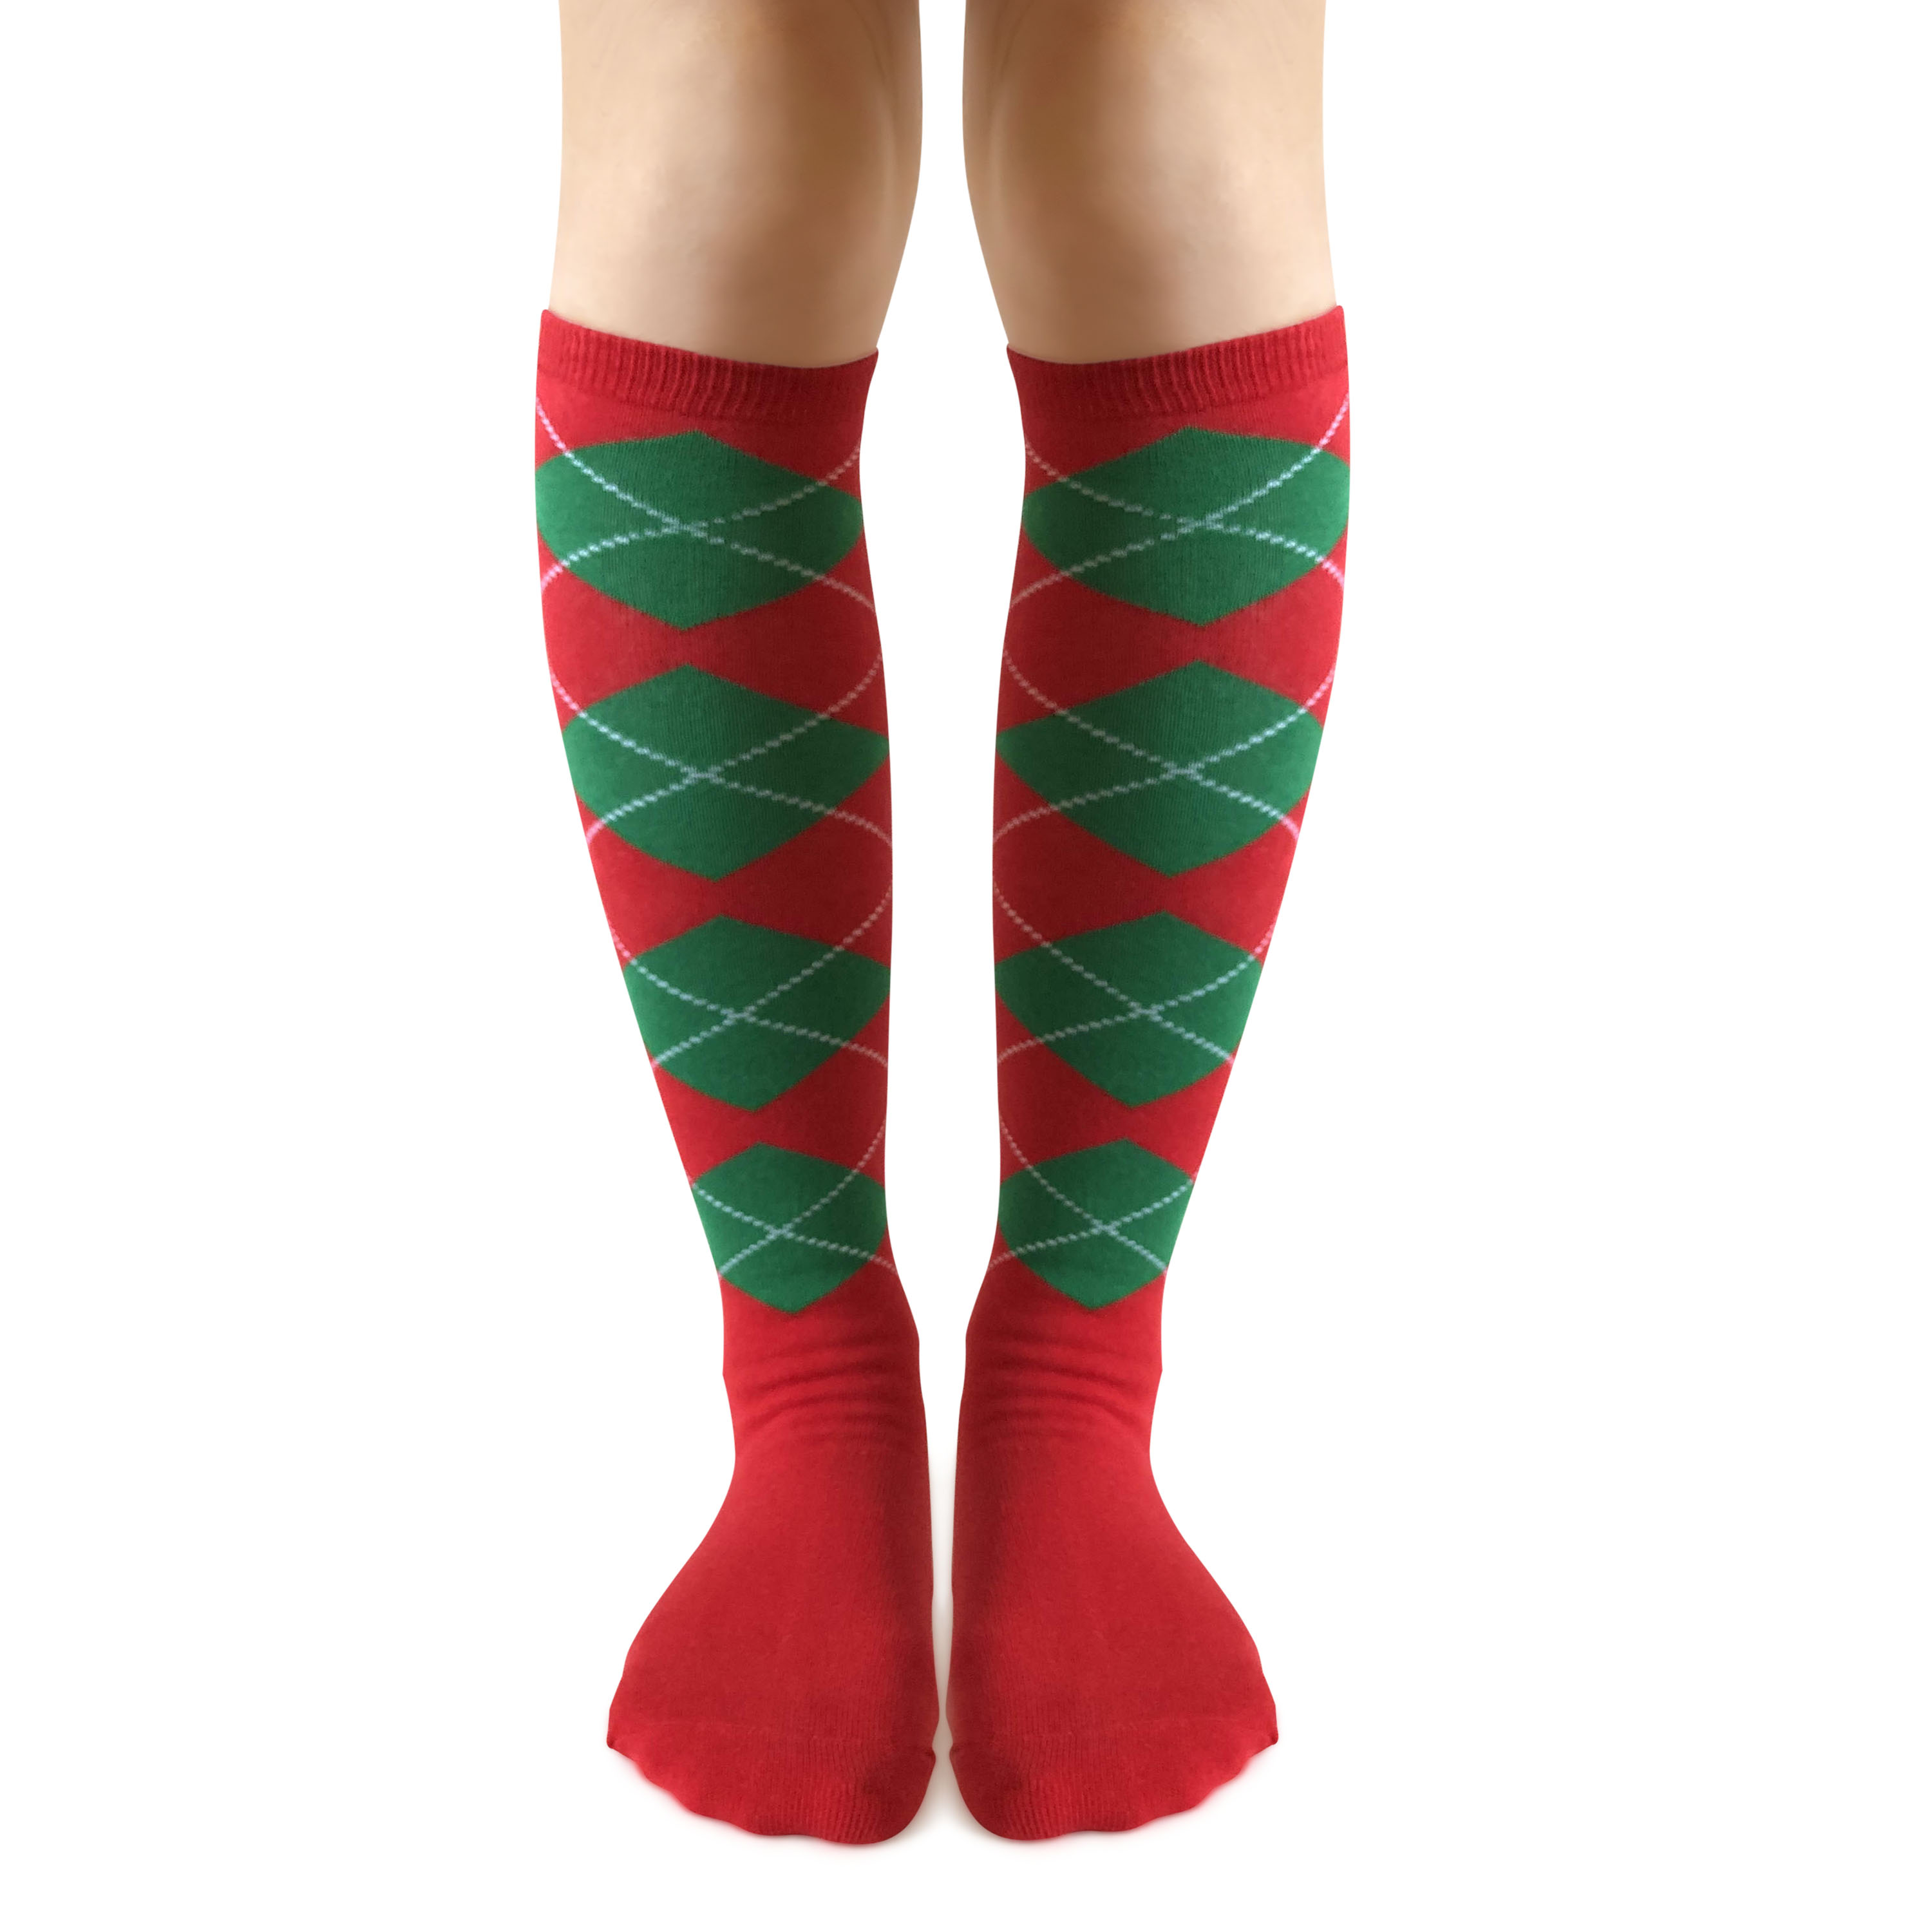 Groomsmen Socks Gift, Argyle Socks For Men and more